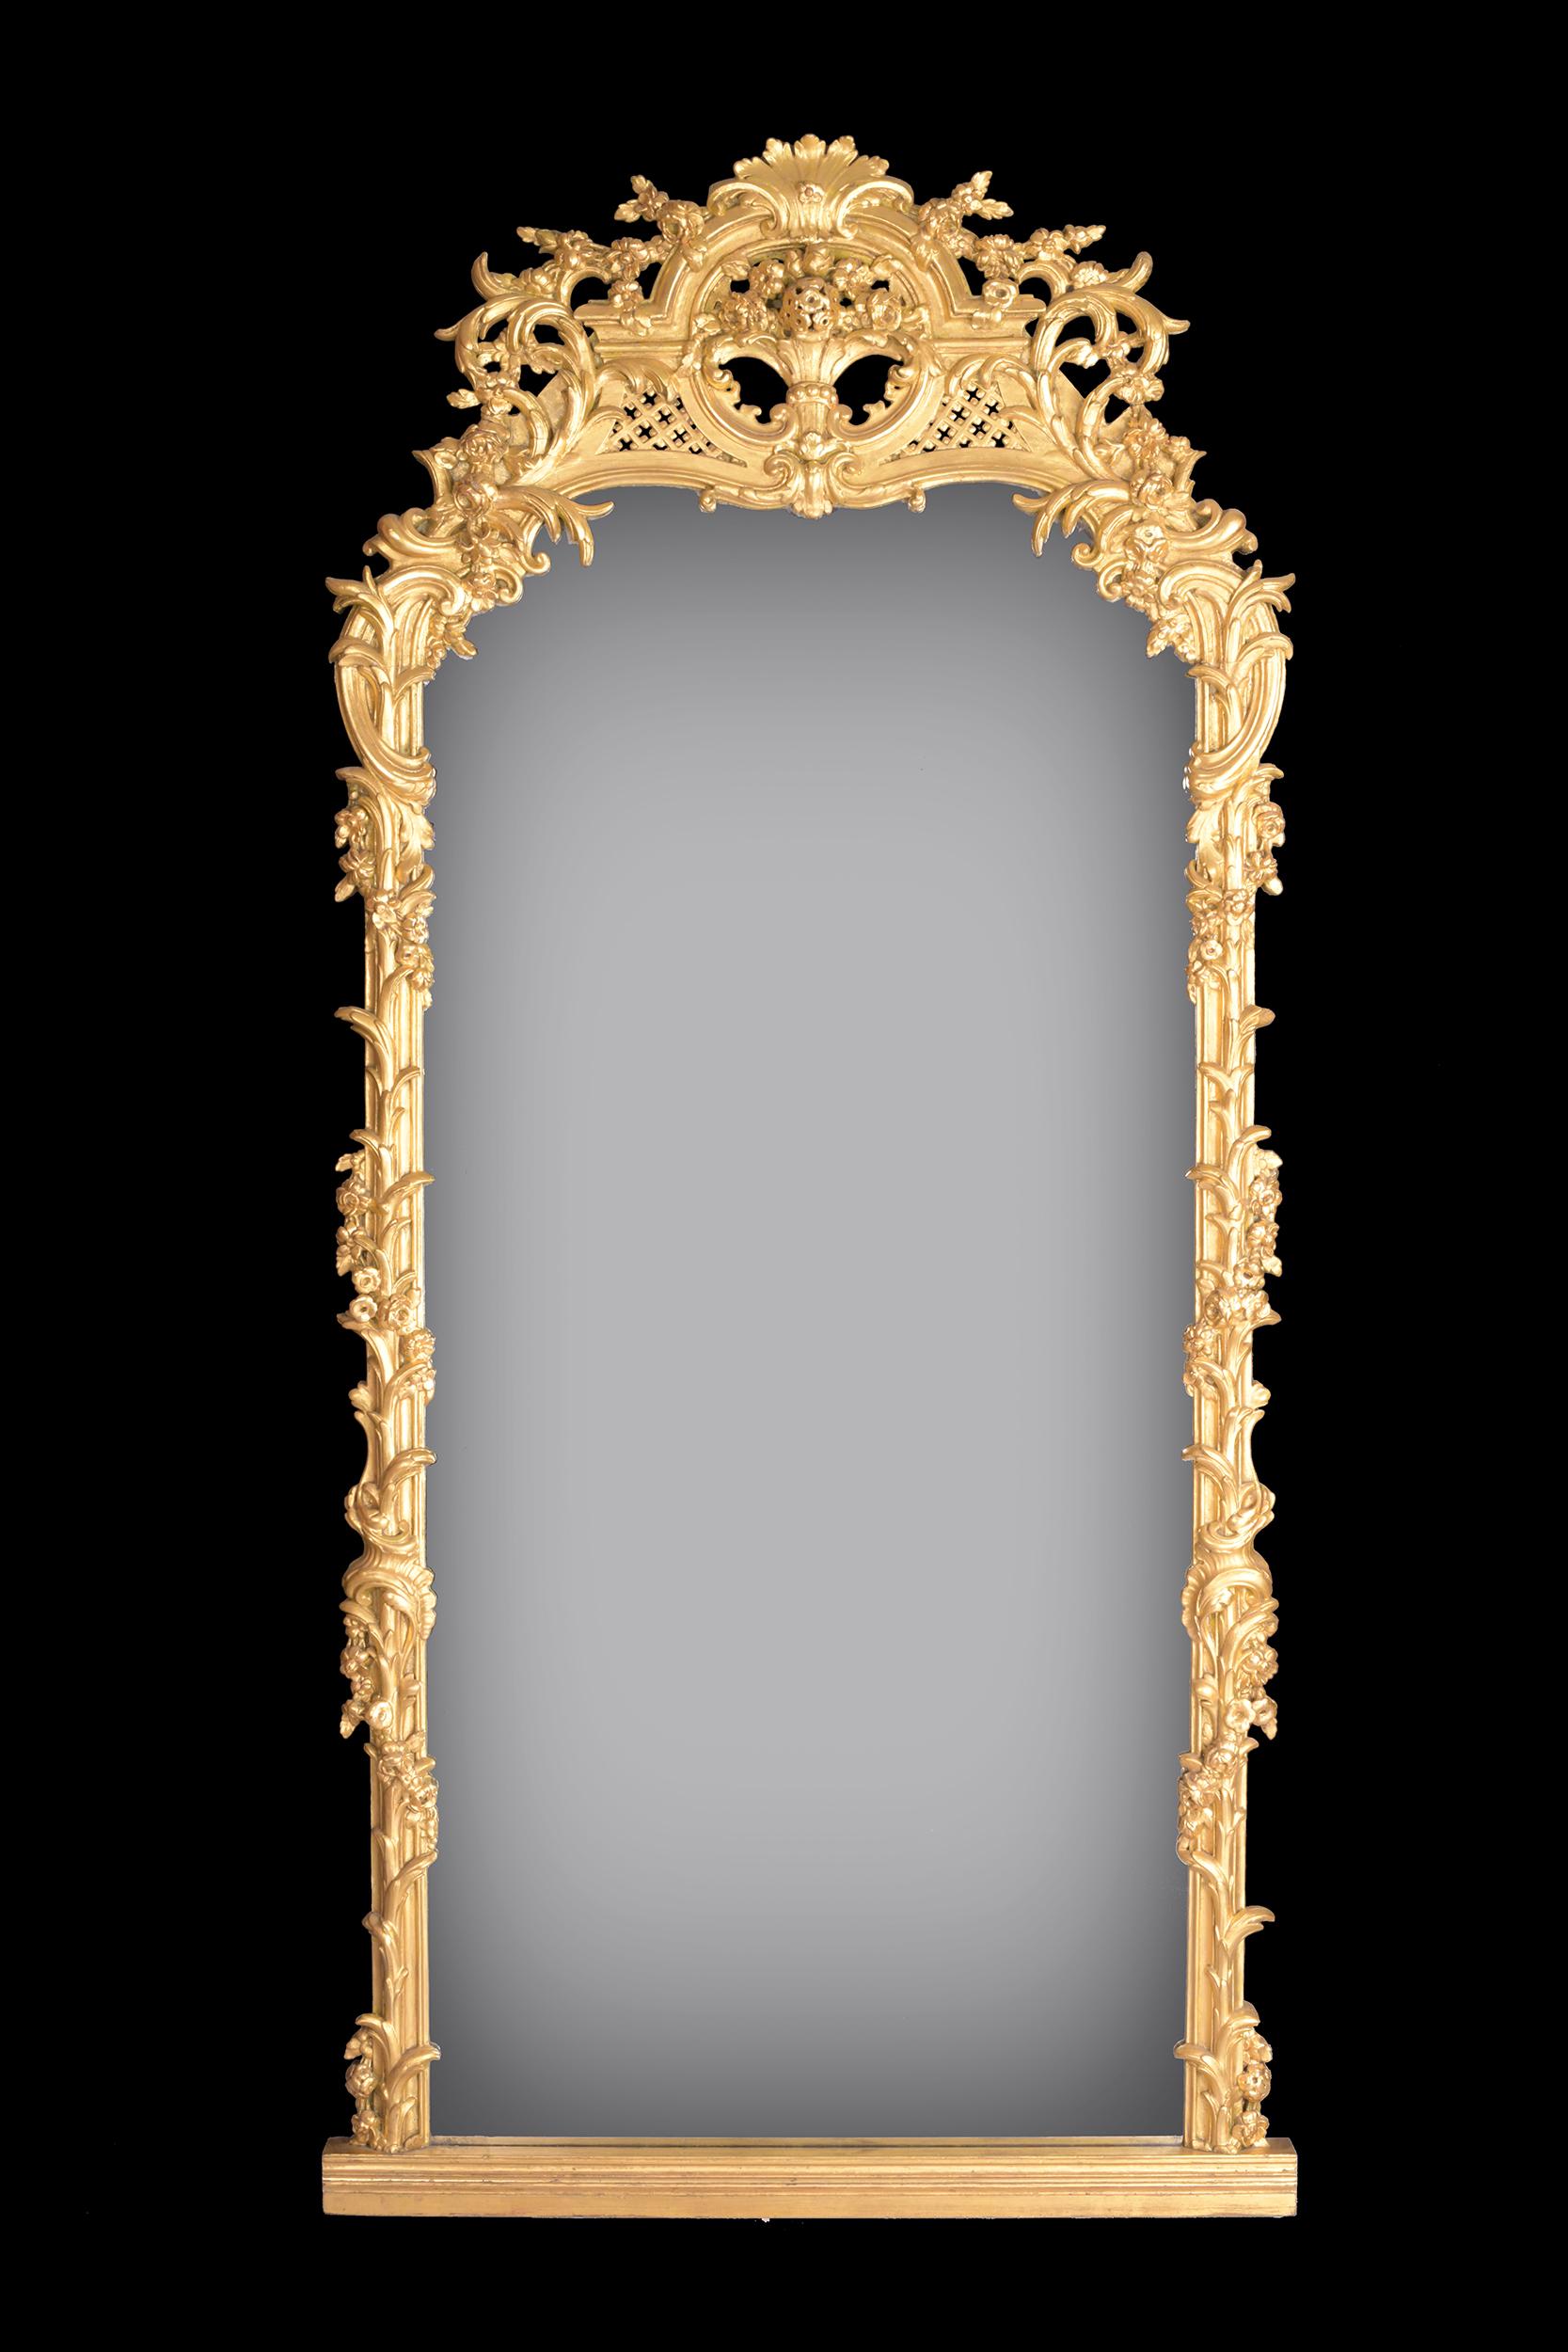 Ein sehr schöner, großer und attraktiver vergoldeter Spiegel in gewölbter, rechteckiger Form, umgeben von einem kunstvollen Blatt- und Rankenwerk, überragt von einem Rankenwerk und einer zentralen Muschel, die auf einer Plattform steht.

Um